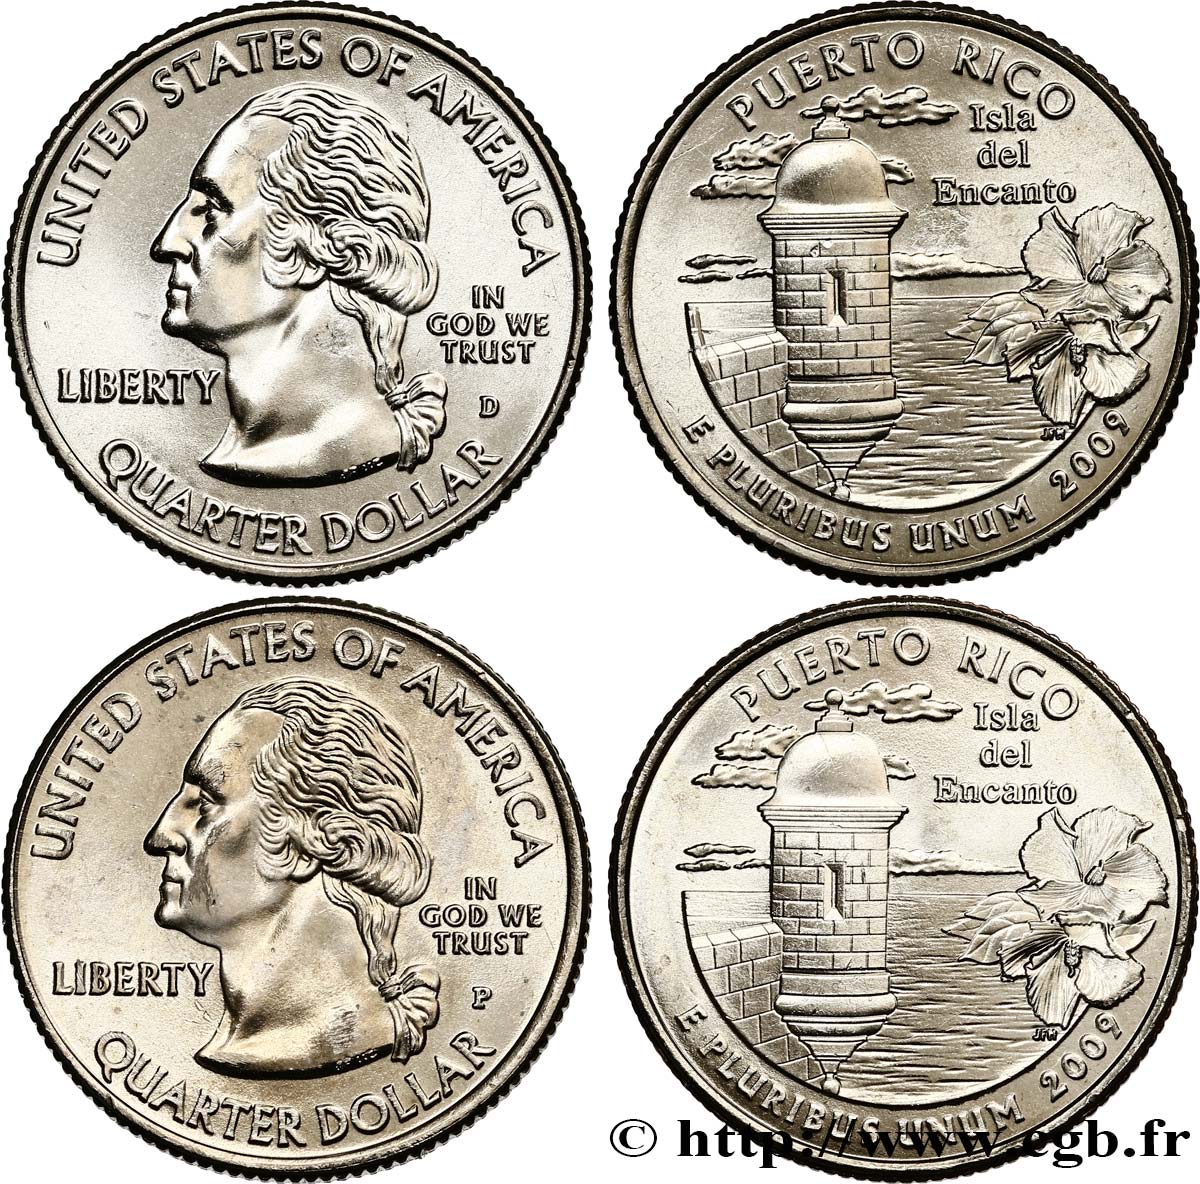 STATI UNITI D AMERICA Lot de 2 monnaies 1/4 Dollar Commonwealth de Puerto Rico 2009 Philadelphie + Denver MS 